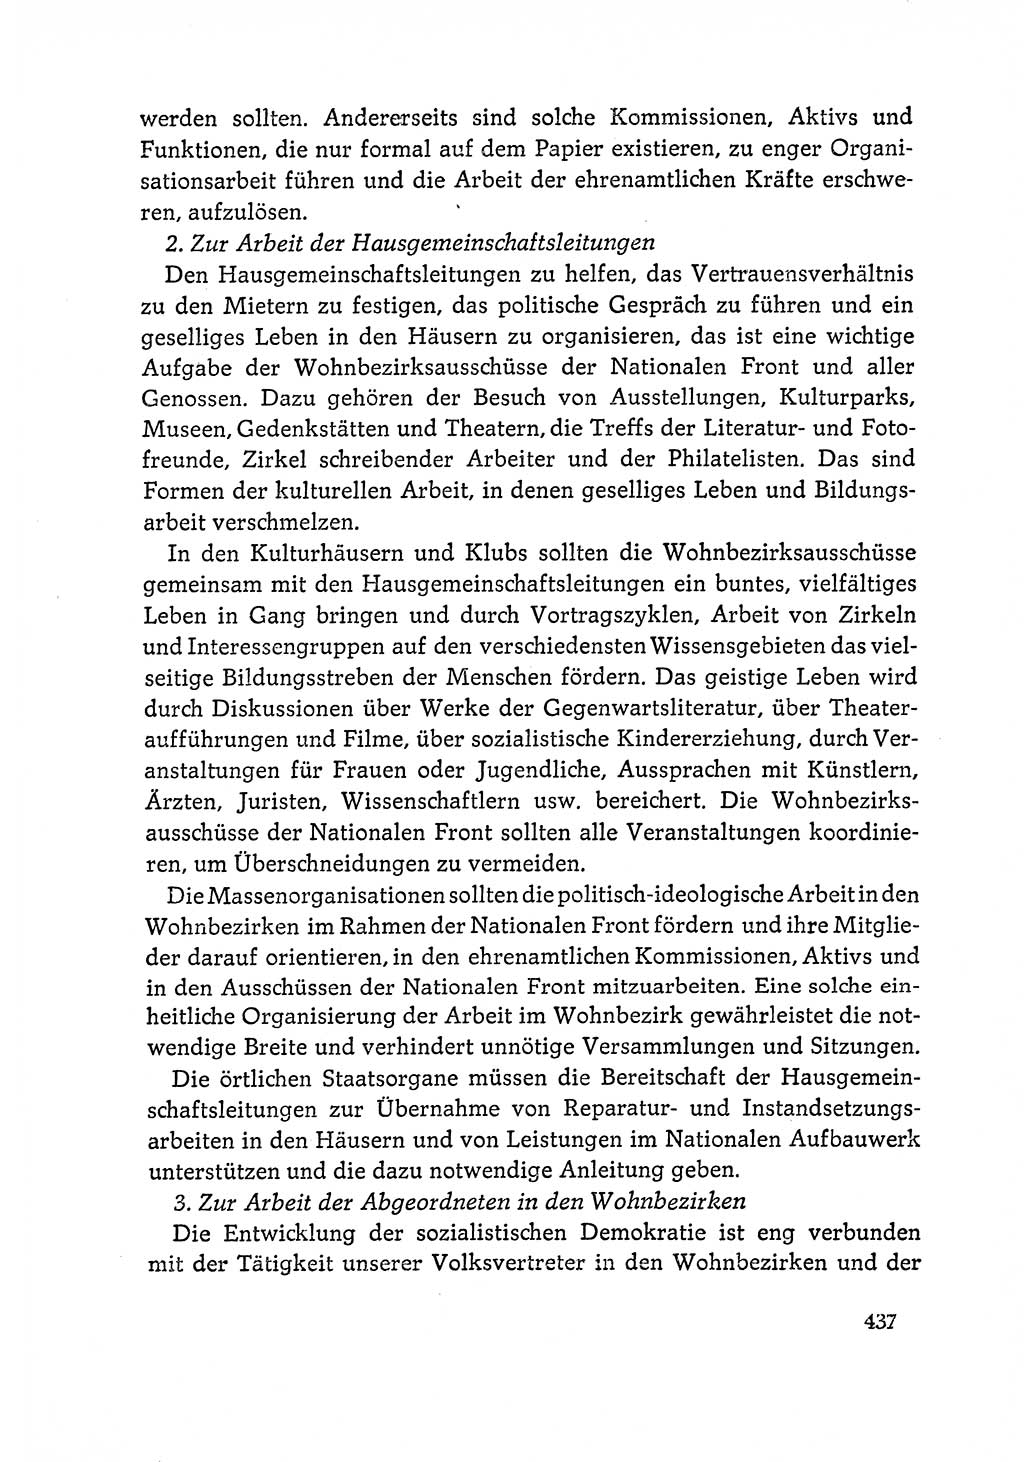 Dokumente der Sozialistischen Einheitspartei Deutschlands (SED) [Deutsche Demokratische Republik (DDR)] 1964-1965, Seite 437 (Dok. SED DDR 1964-1965, S. 437)